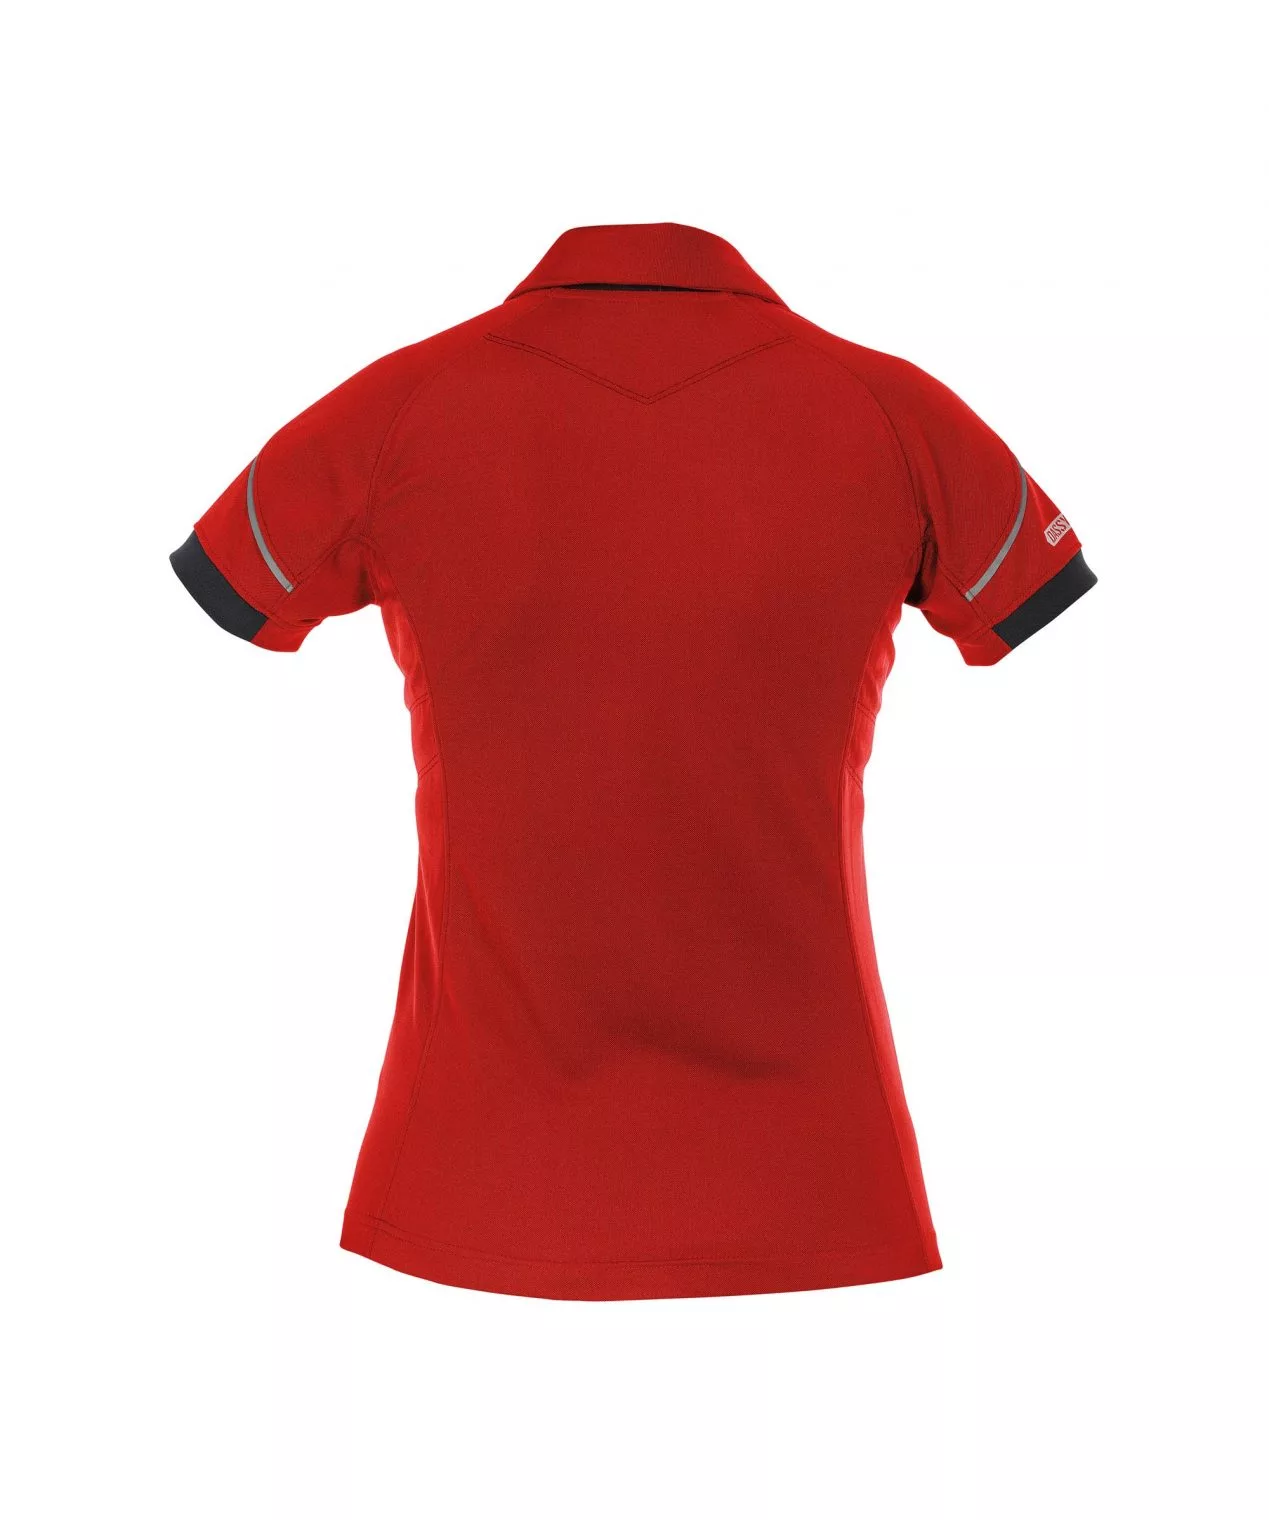 Dassy Traxion Poloshirt Für Damen (Uv-Schutz)